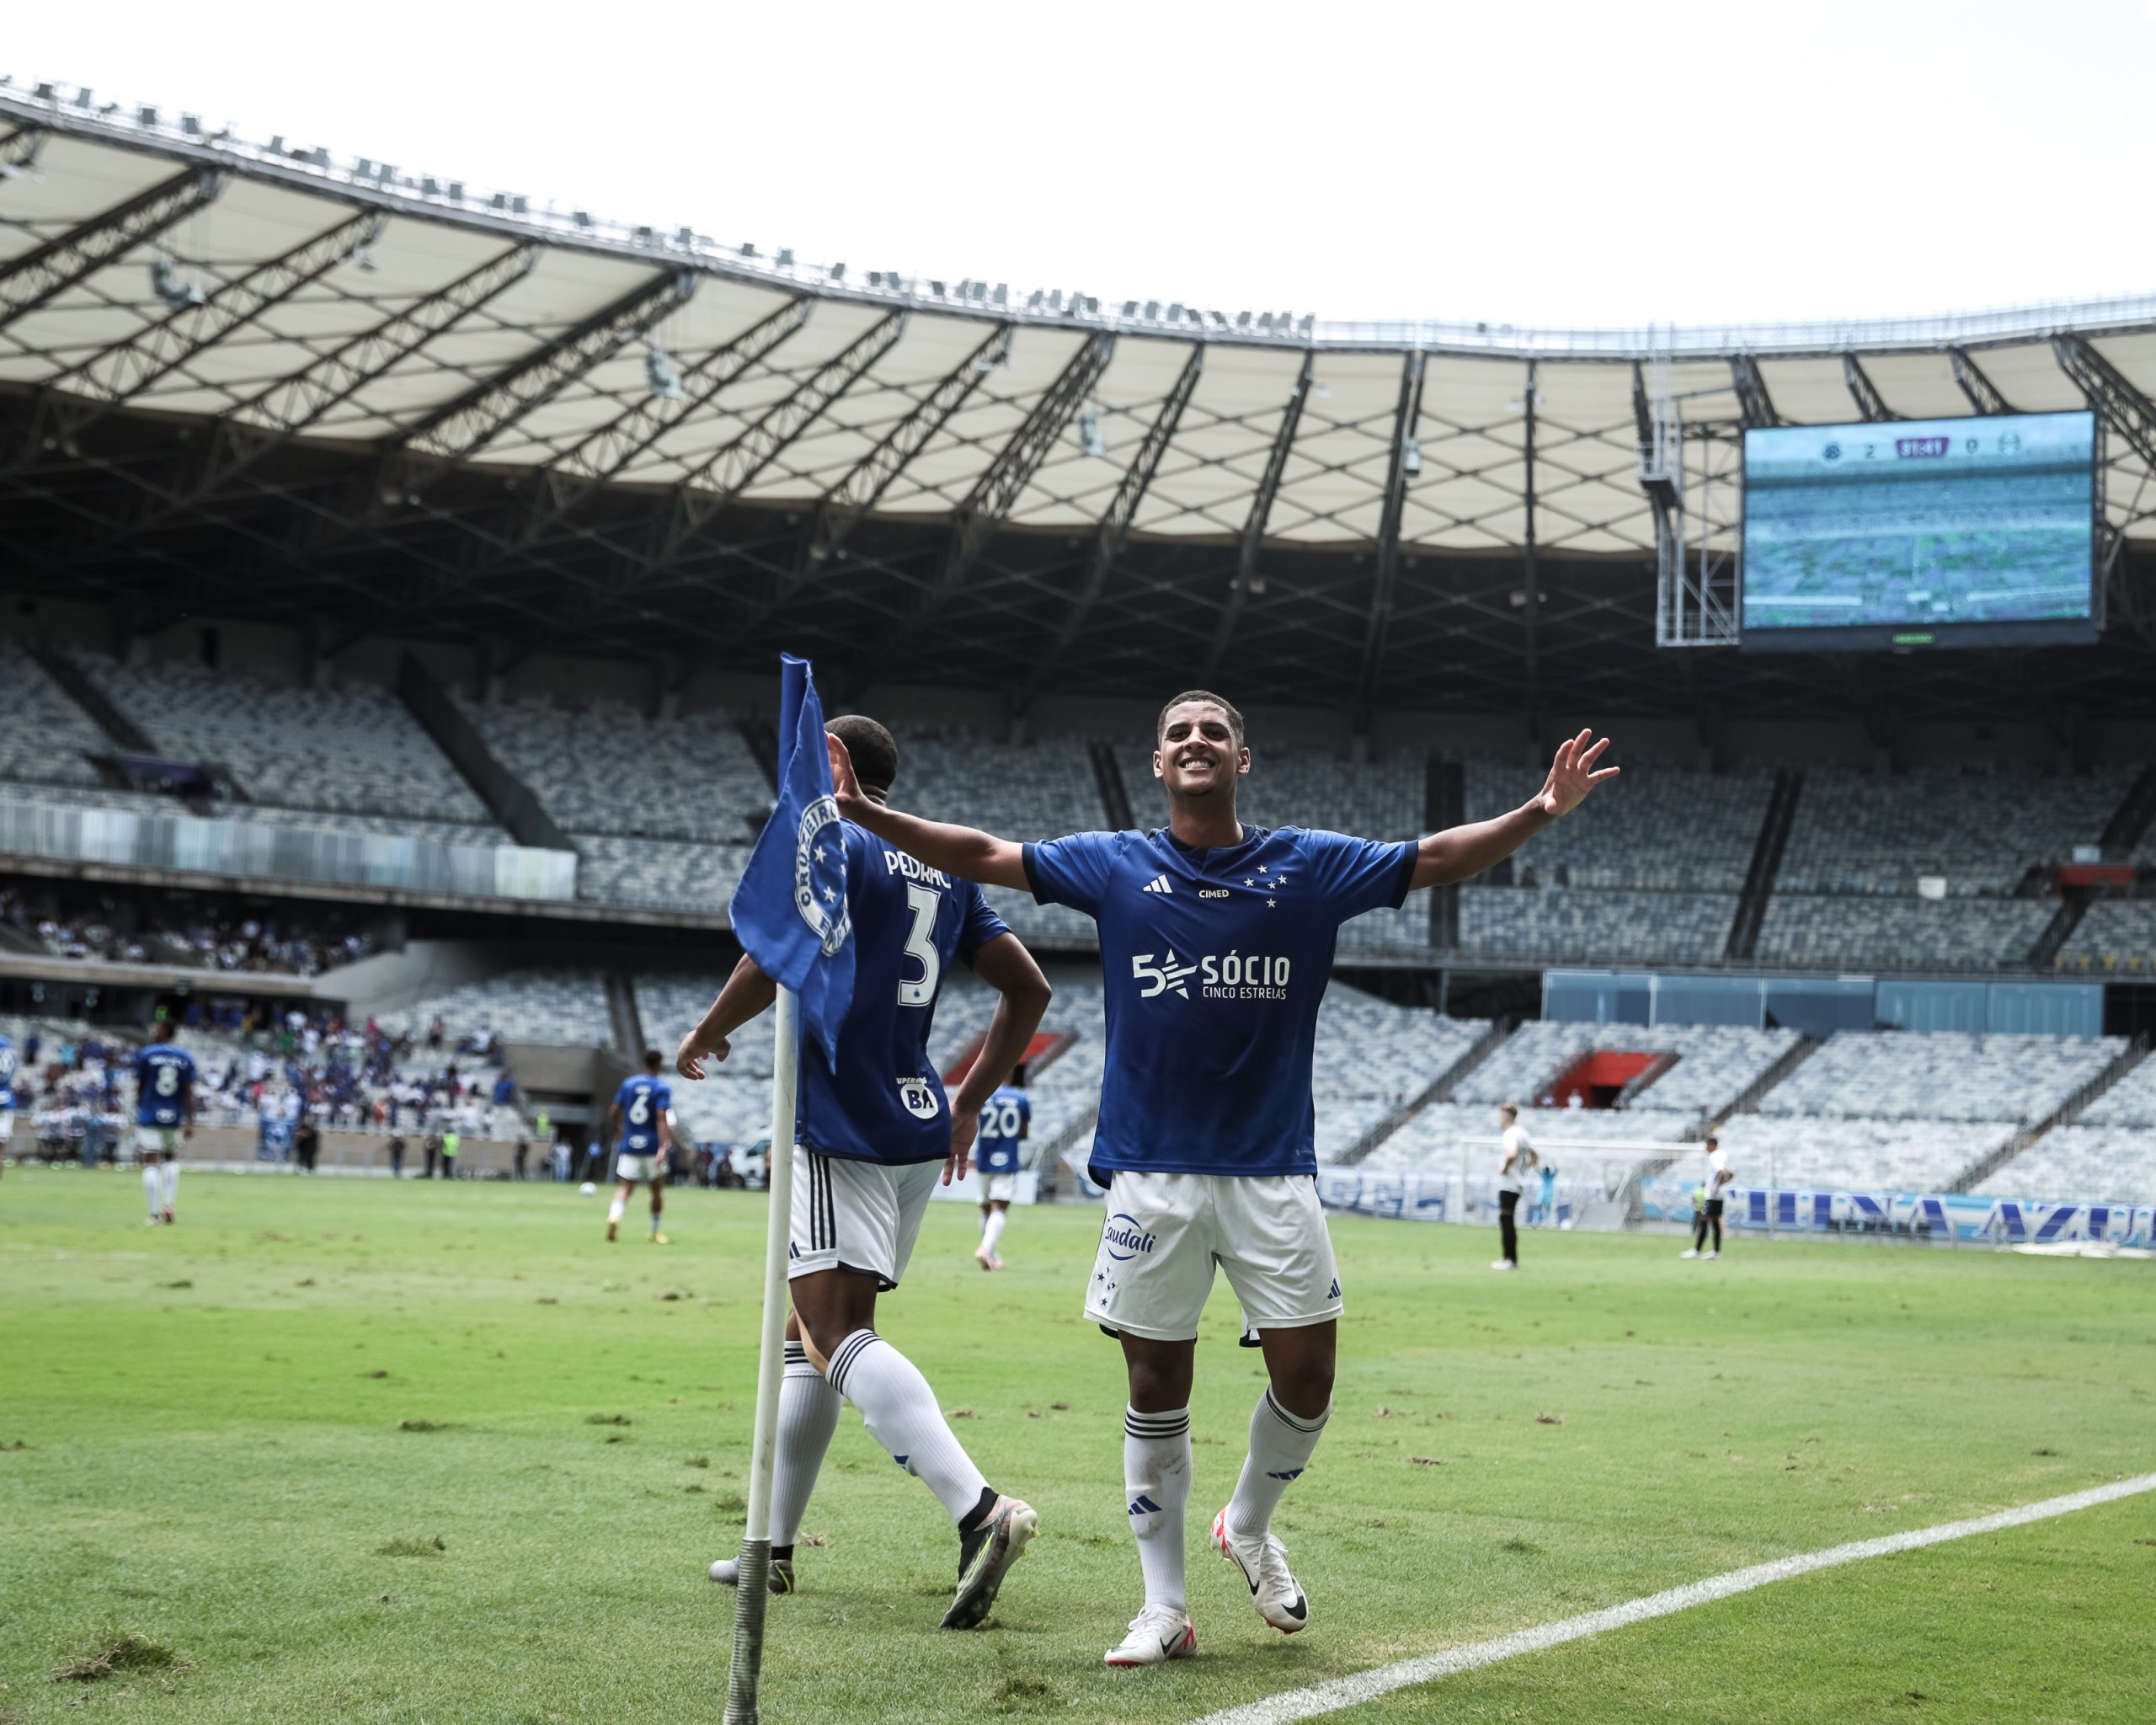 Fernando marcou os dois gols da final (Foto: Tiago Tindade / Staff Imagens)